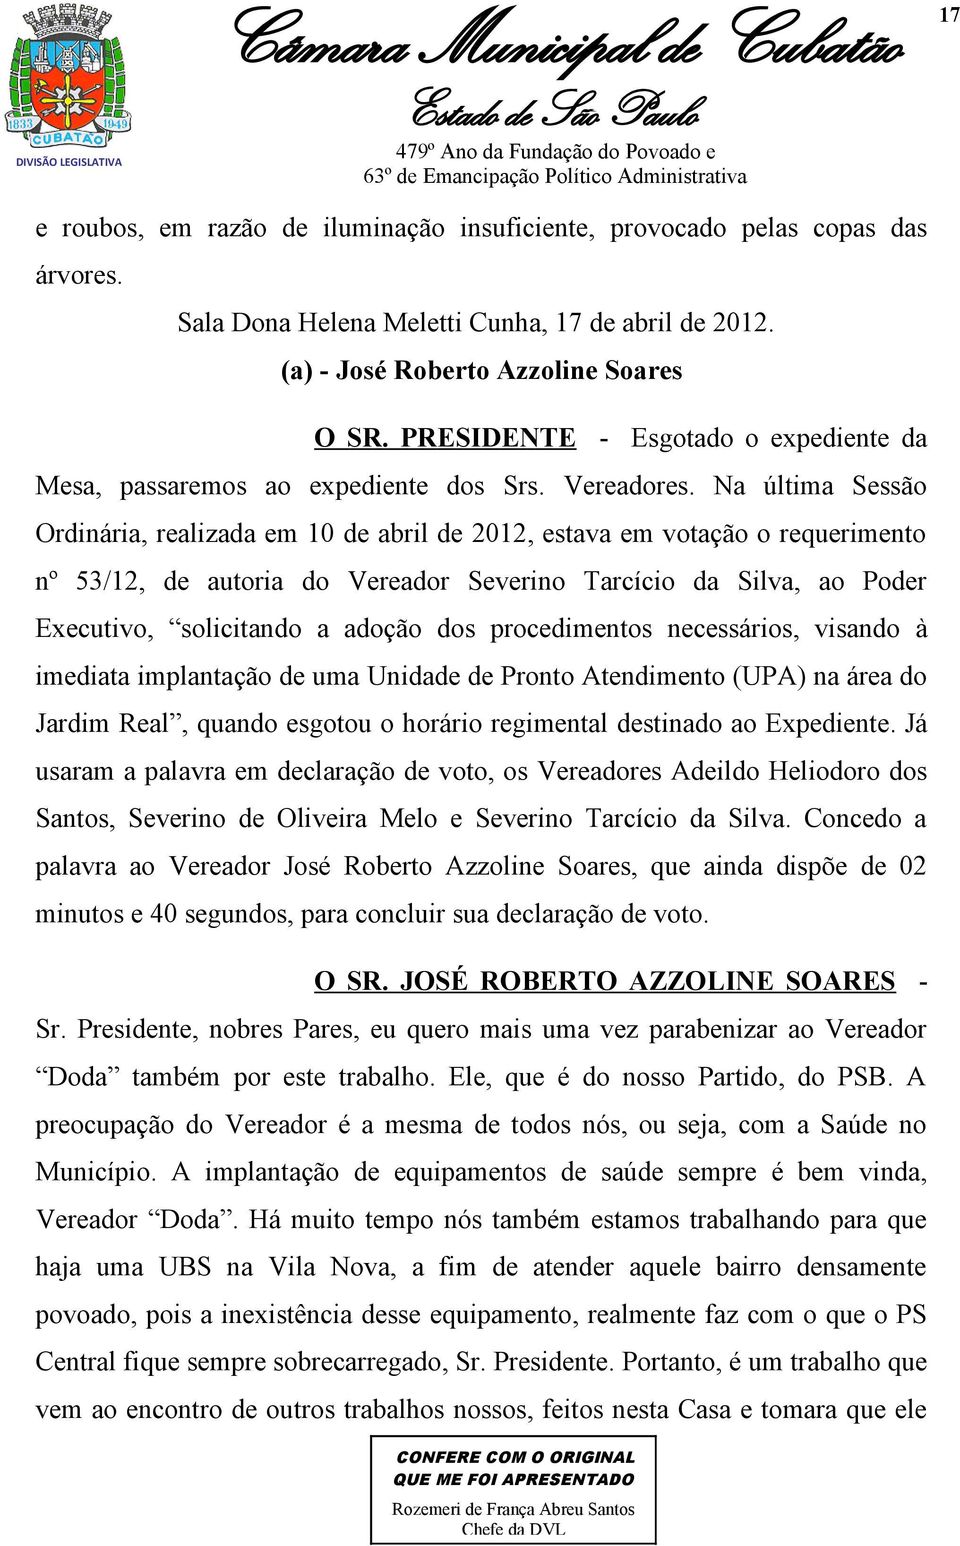 Na última Sessão Ordinária, realizada em 10 de abril de 2012, estava em votação o requerimento nº 53/12, de autoria do Vereador Severino Tarcício da Silva, ao Poder Executivo, solicitando a adoção